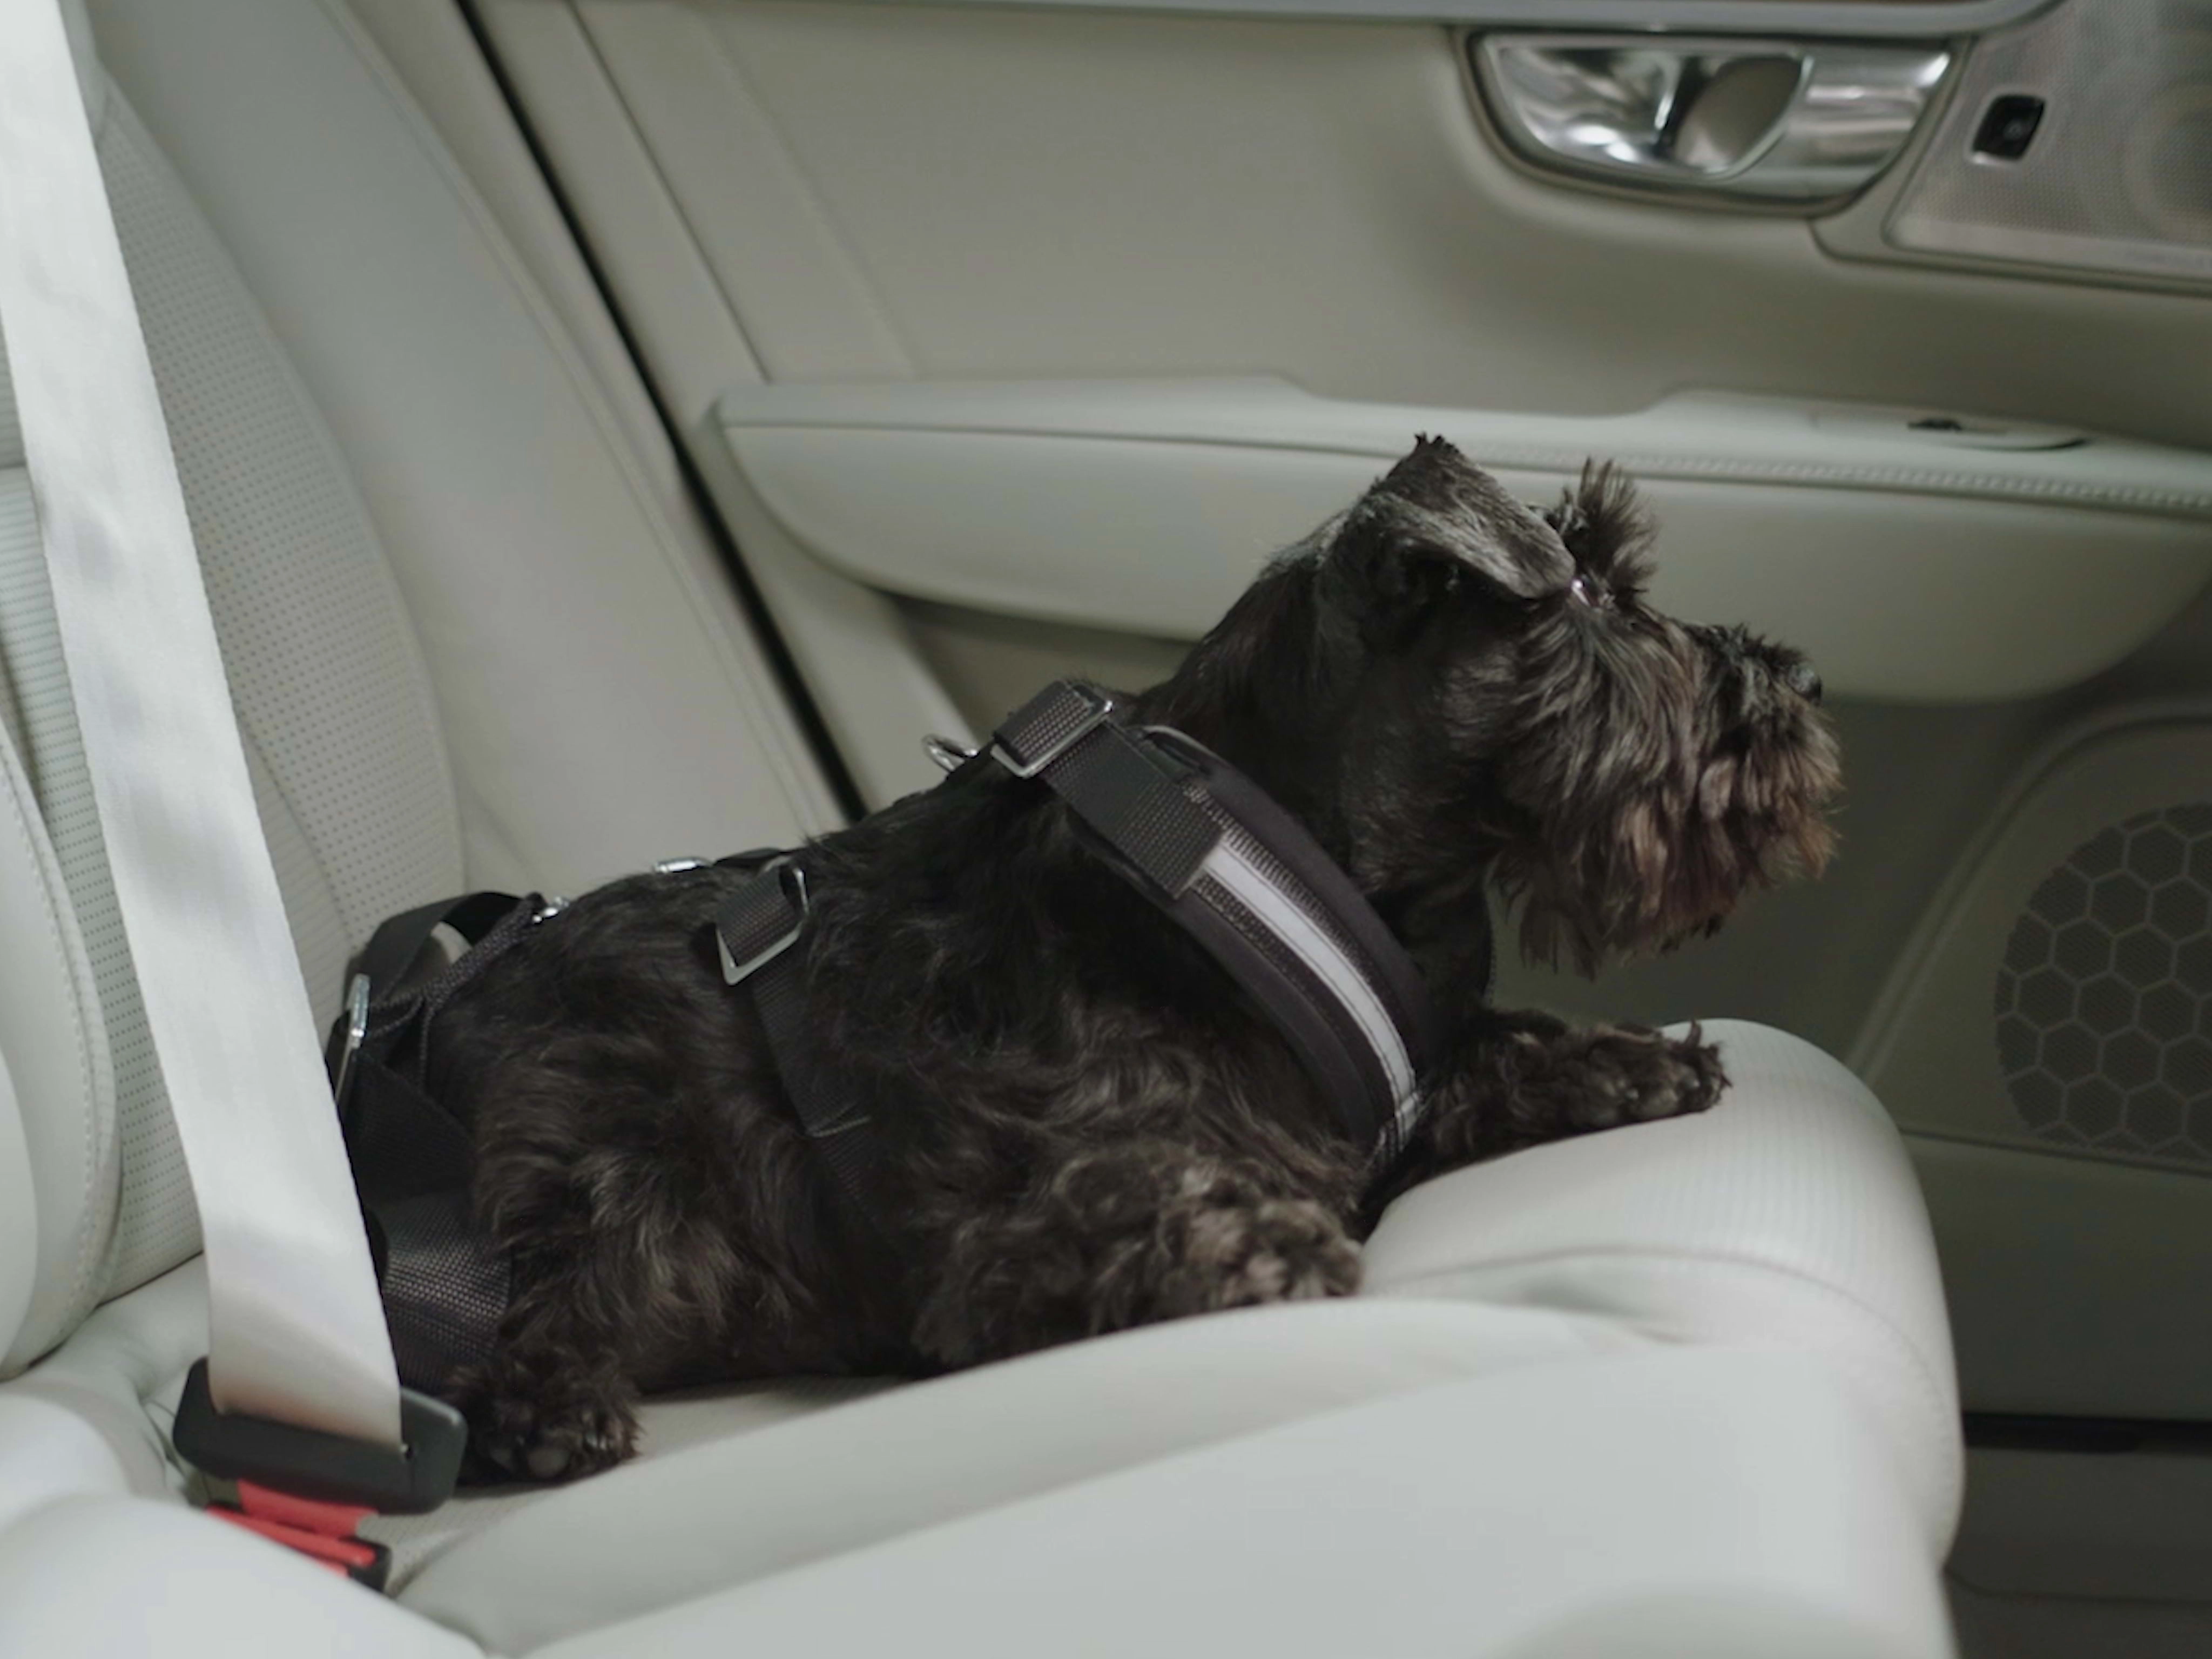 Juodas škotų terjeras atsipalaidavęs guli ant šviesios odinės galinės „Volvo“ automobilio sėdynės.